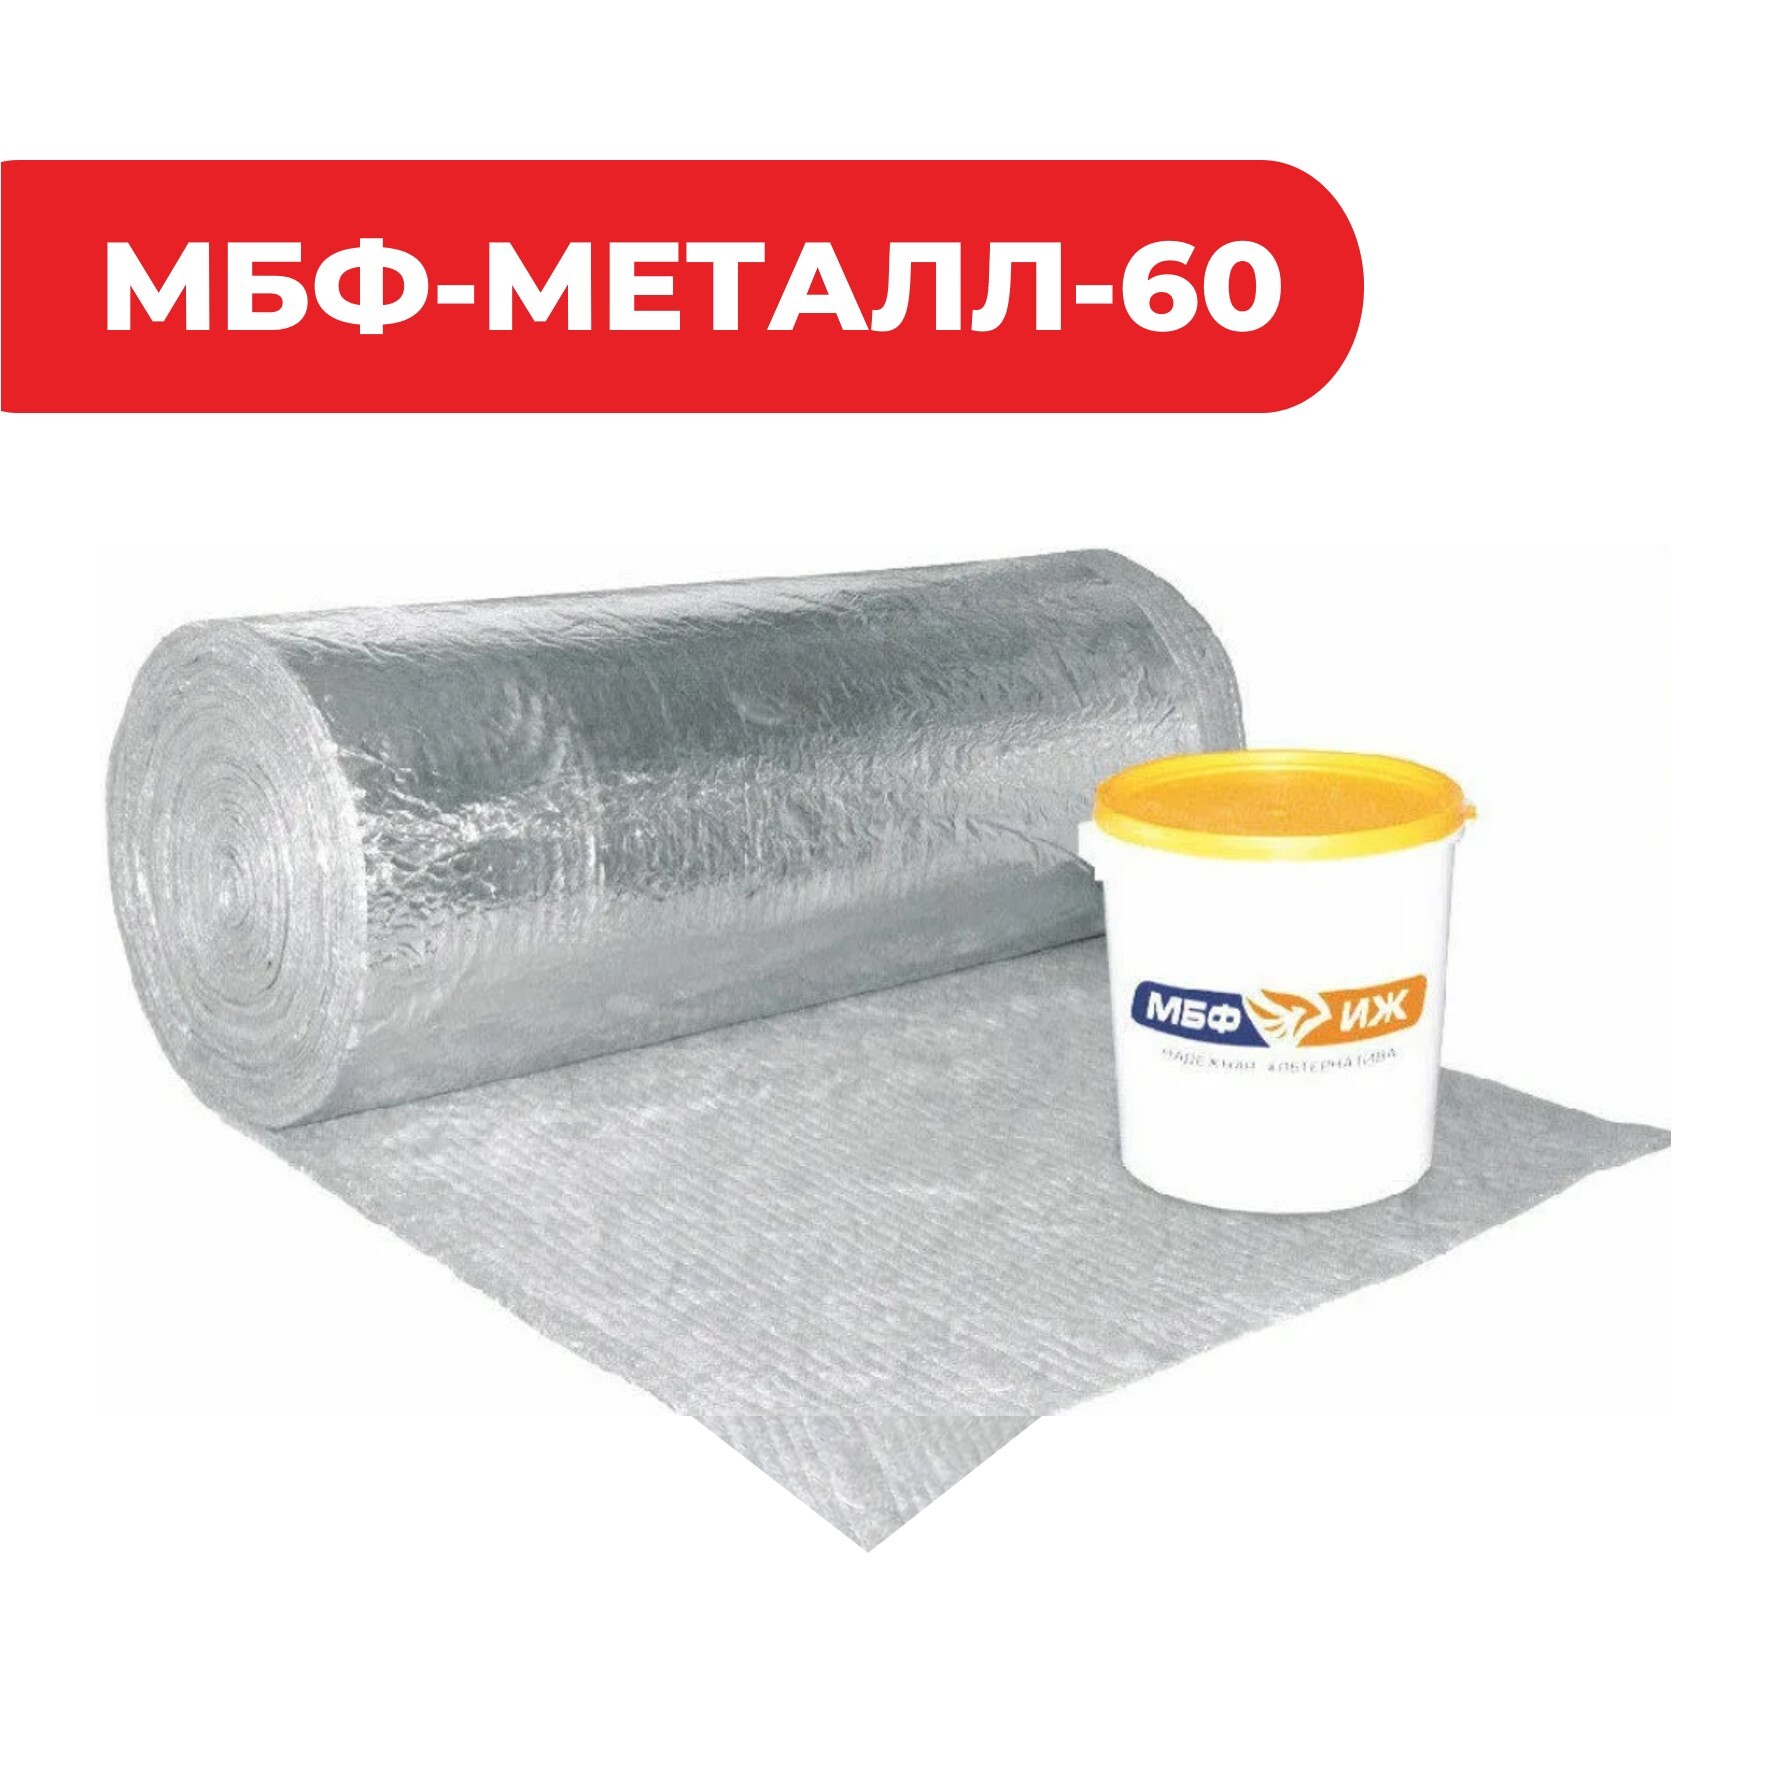 Конструктивная система огнезащиты металлоконструкций «МБФ-МЕТАЛЛ-60»